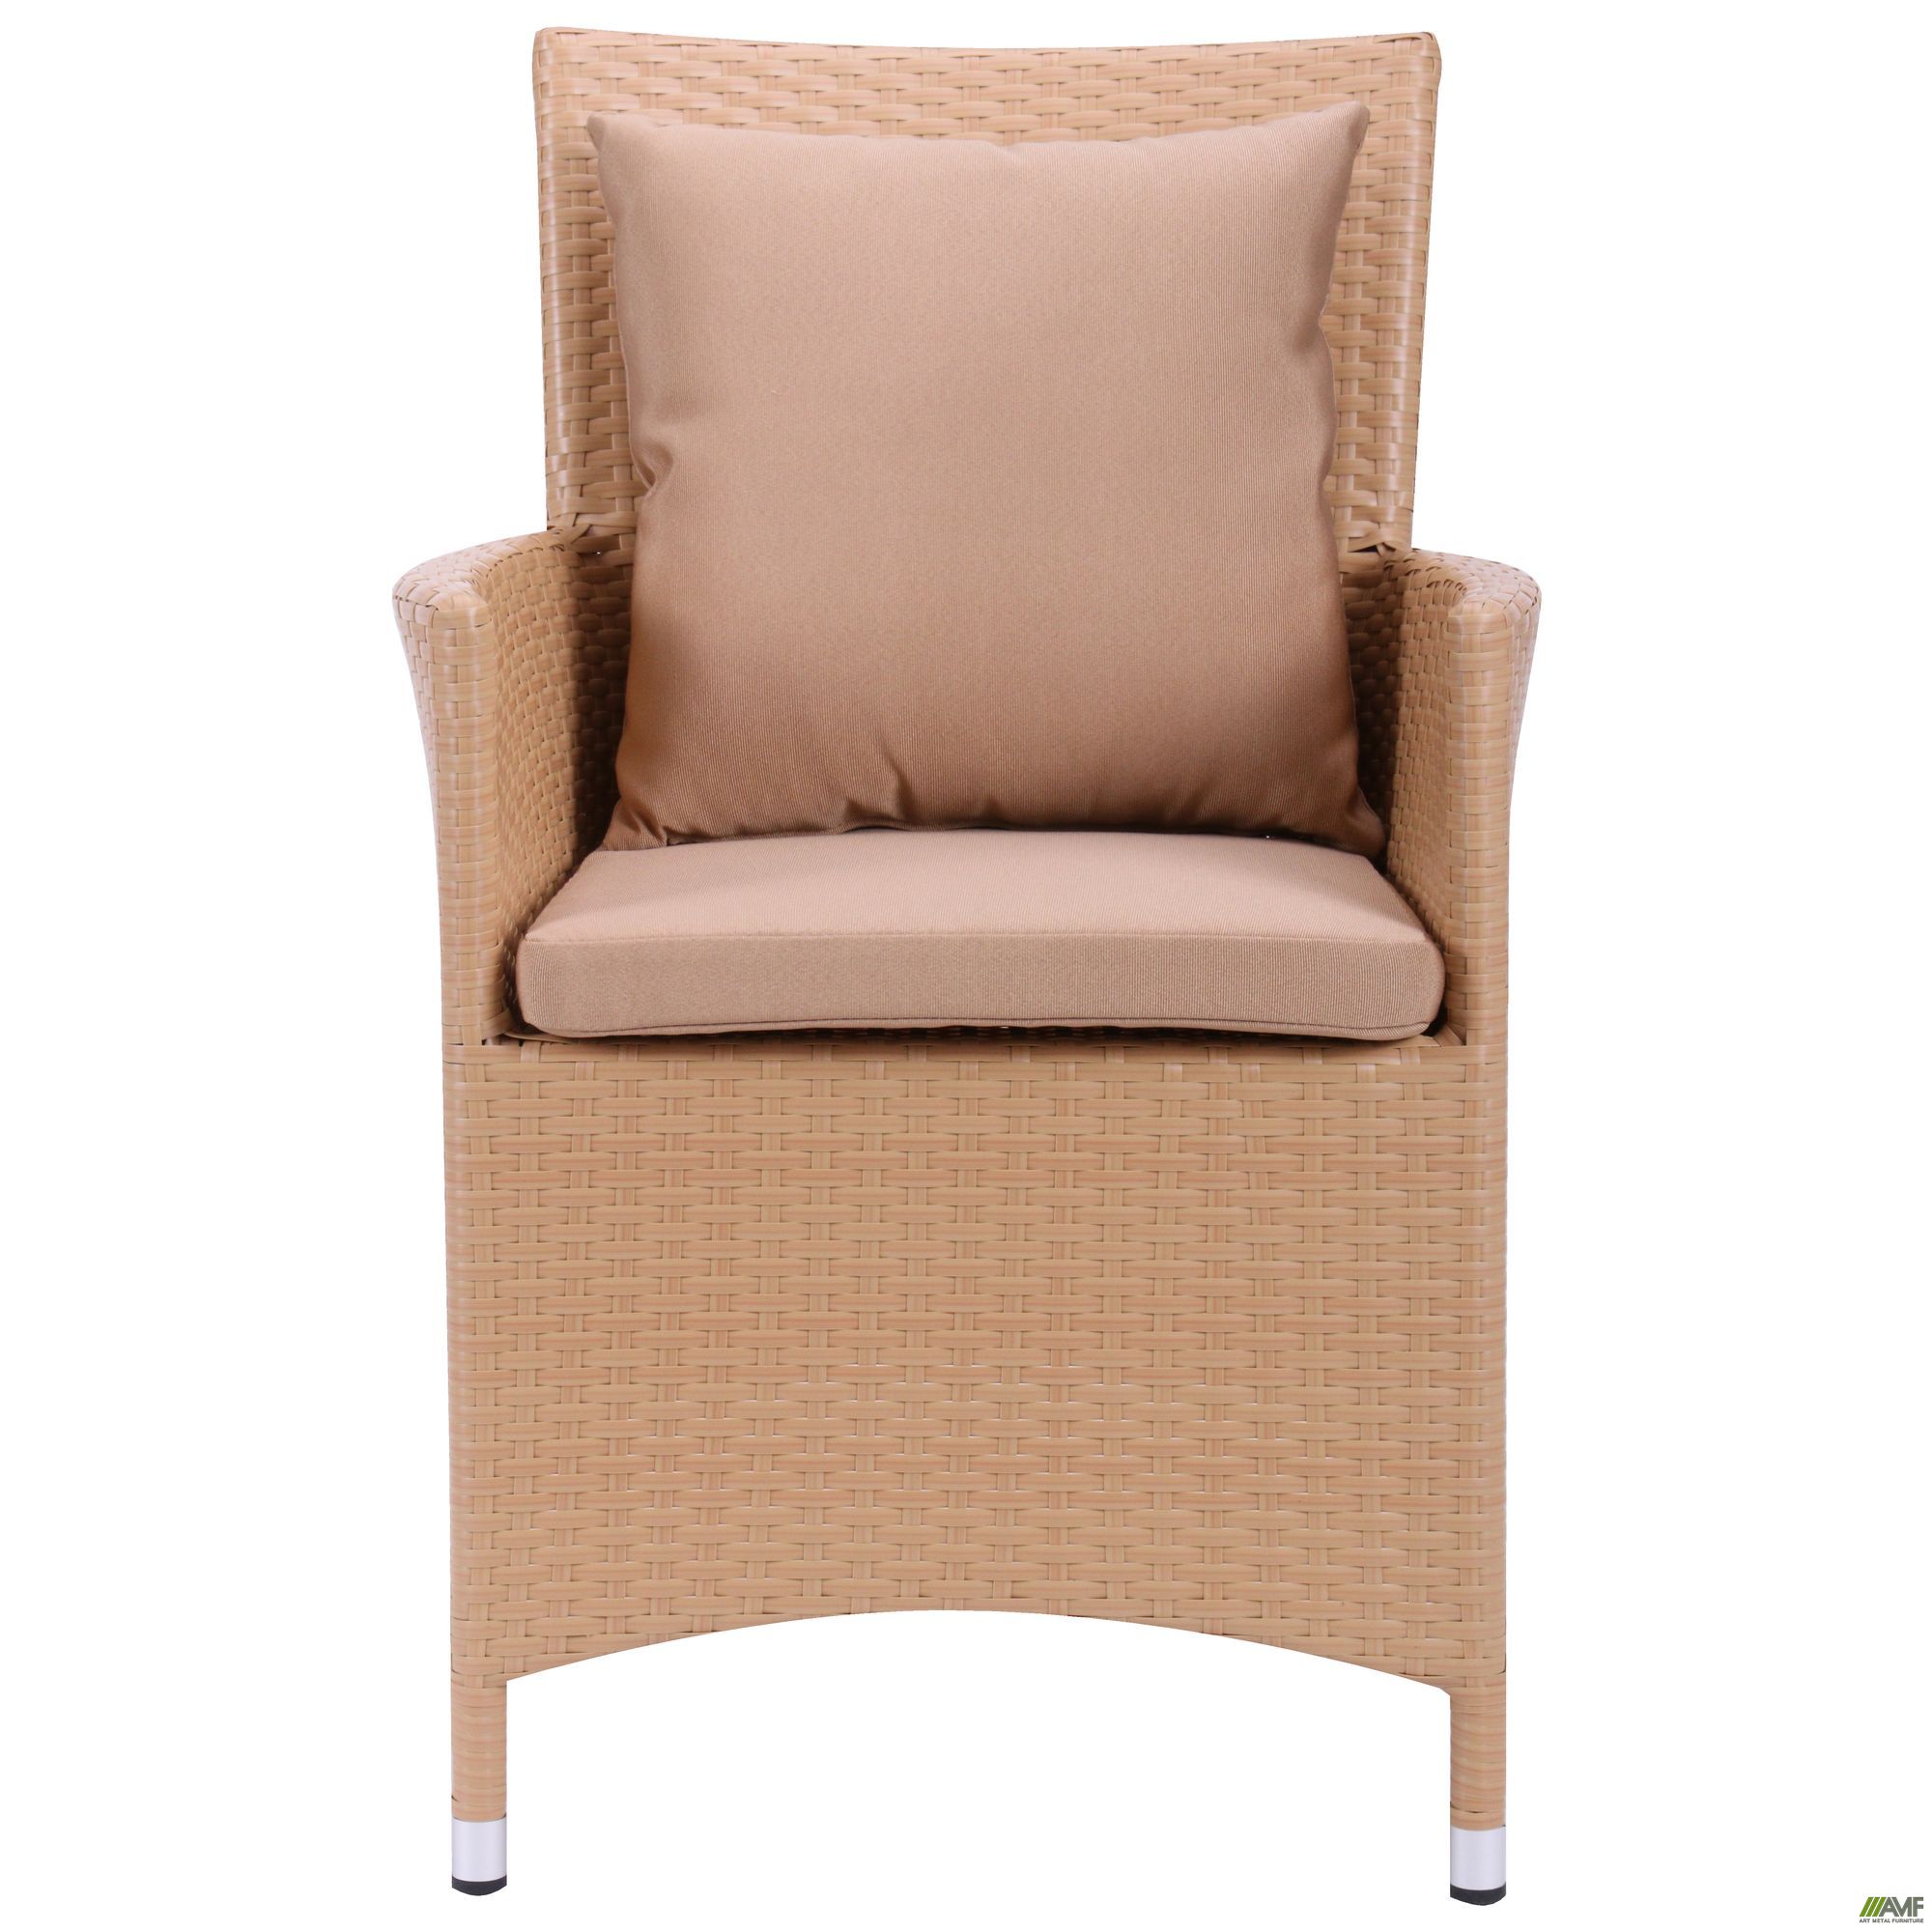 Фото 10 - Комплект мебели Samana-6 из ротанга Elit (SC-8849) Sand AM3041 ткань A14203 